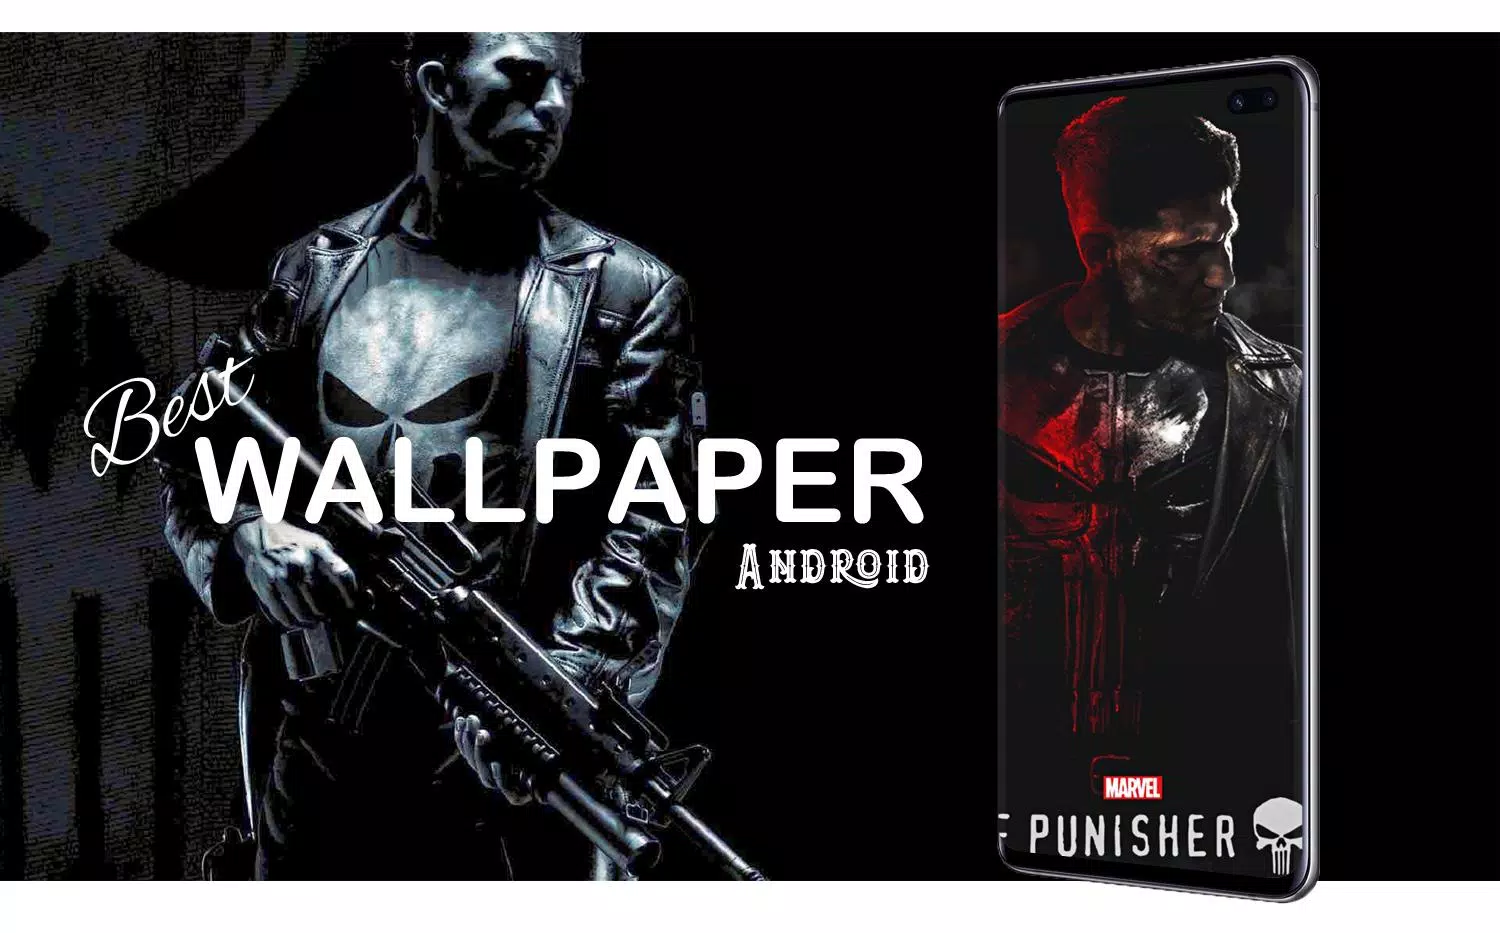 Have a Punisher mobile wallpaper. : r/Marvel